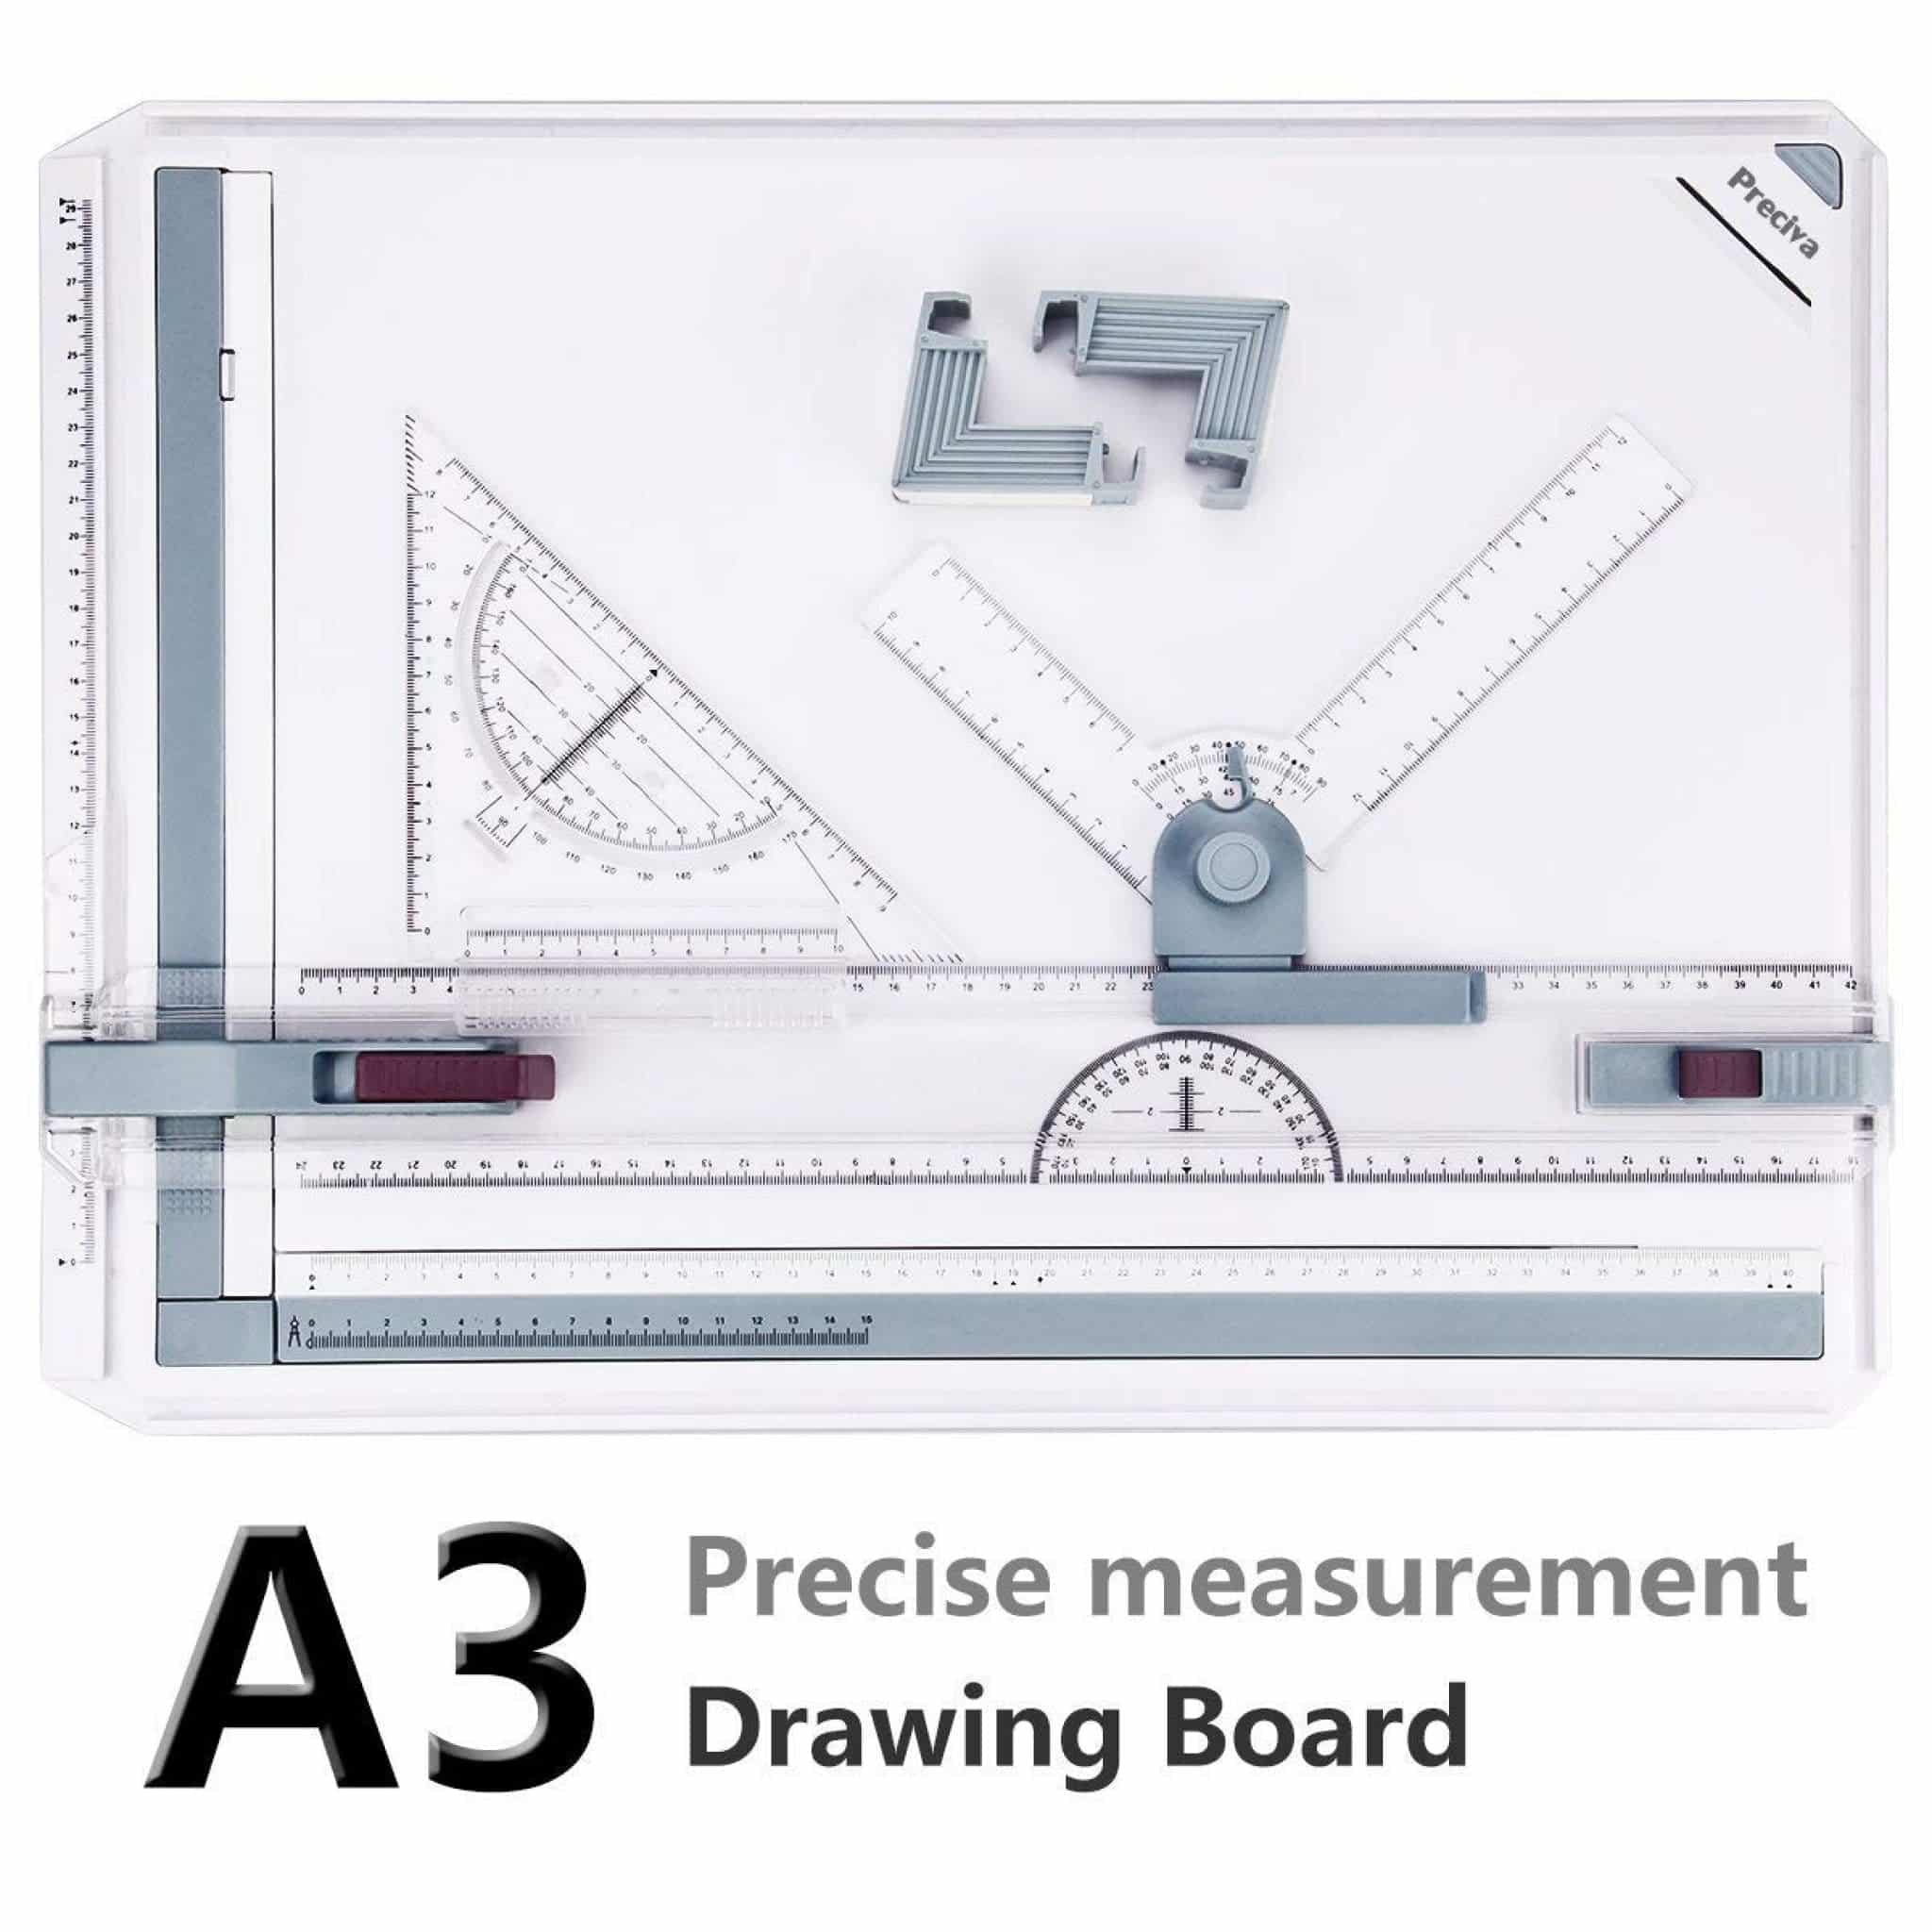 A3 Planche à Dessin, Preciva Drawing Board Metric System 51 x 36.5 cm